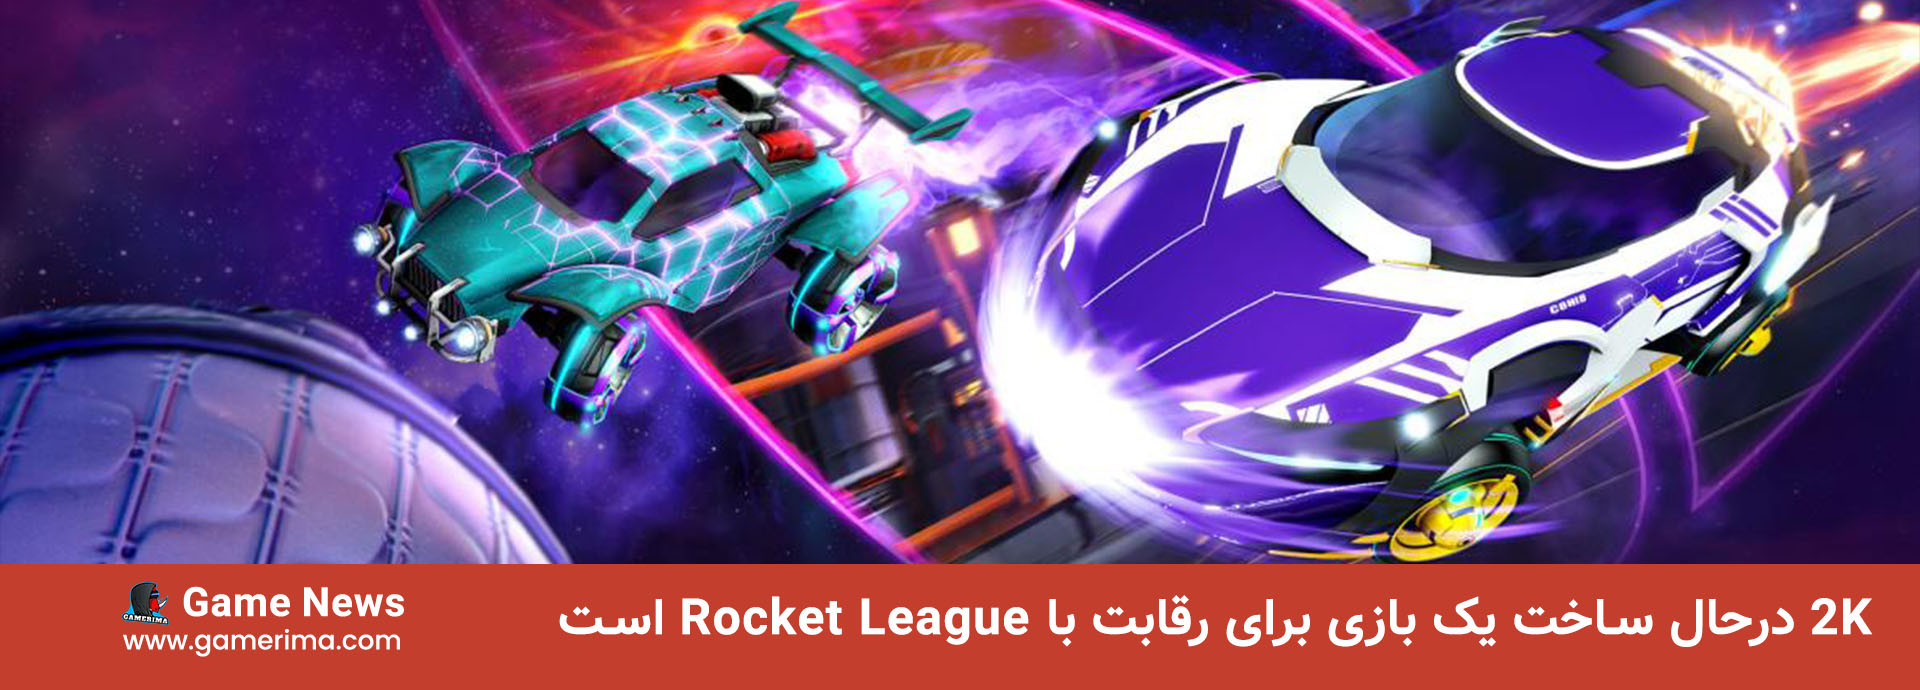 ۲K درحال ساخت یک بازی برای رقابت با Rocket League است